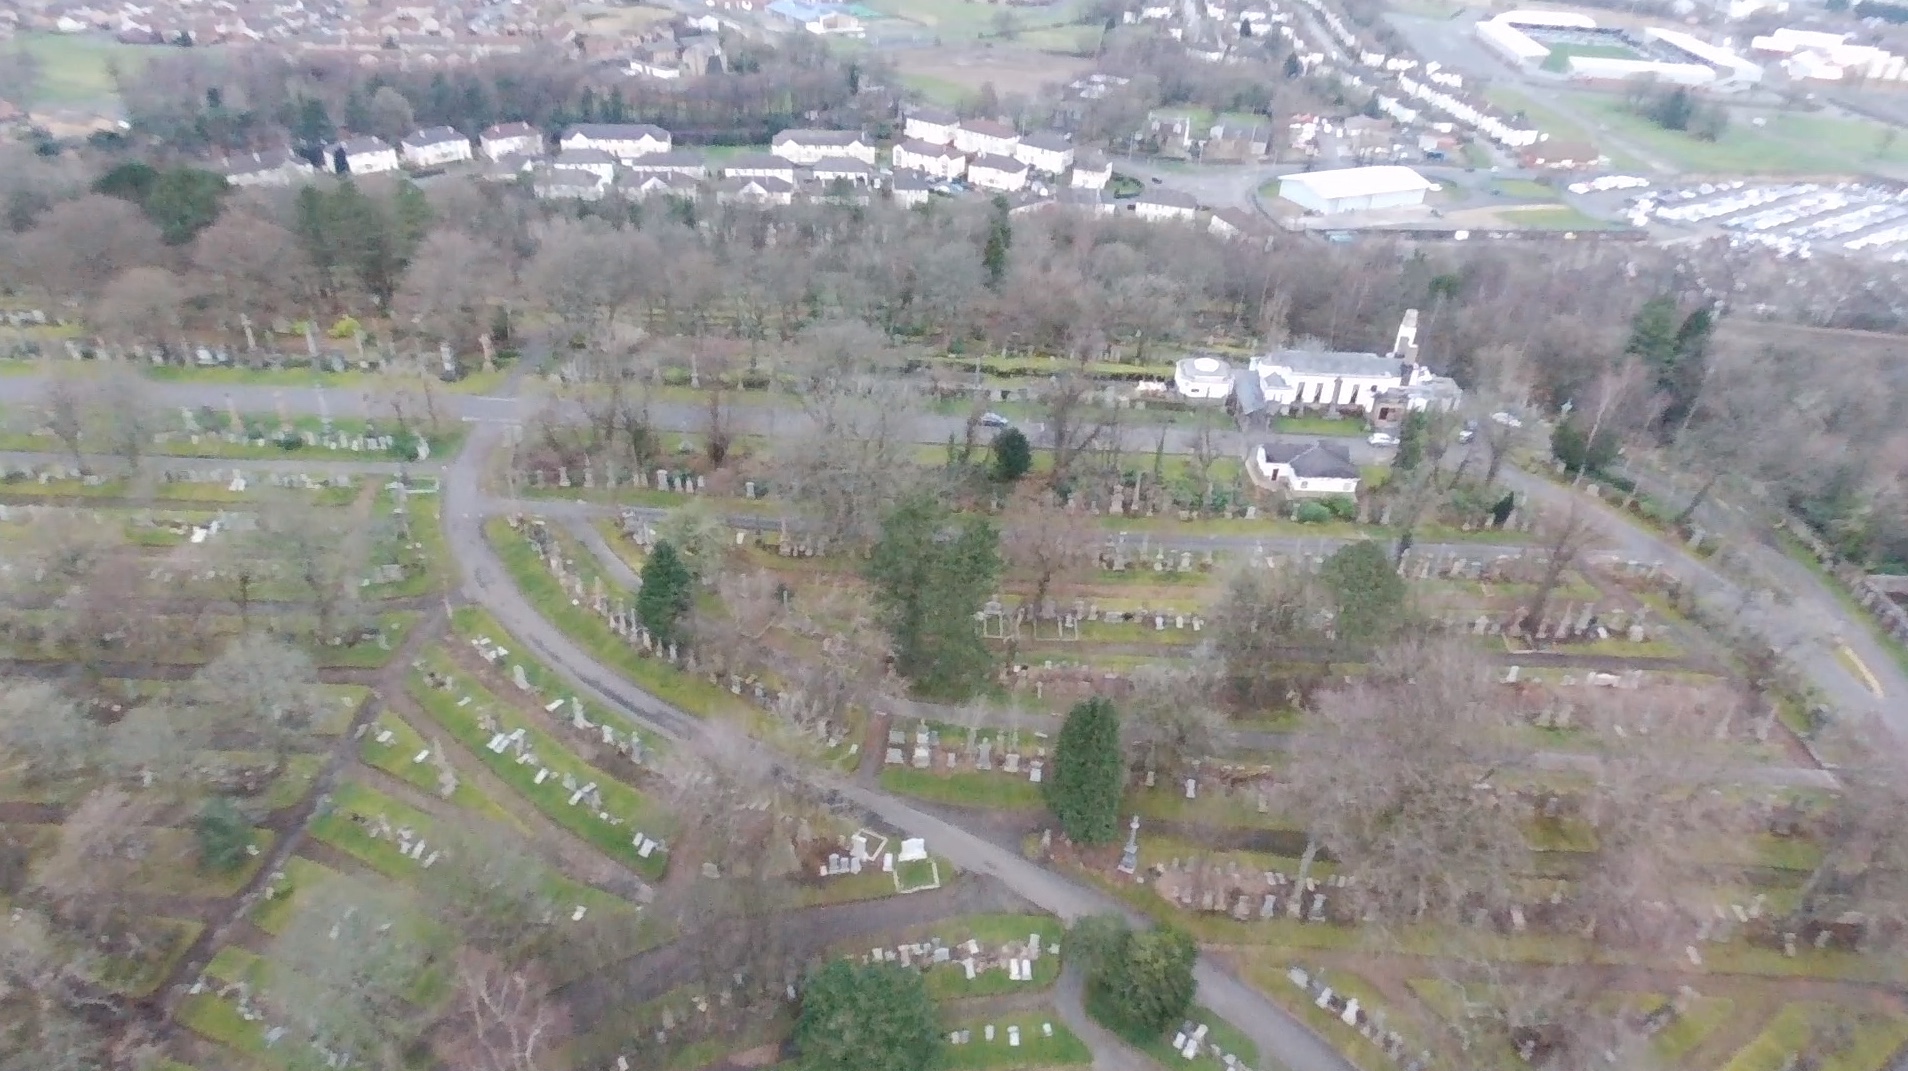 woodside cemetery and crematorium